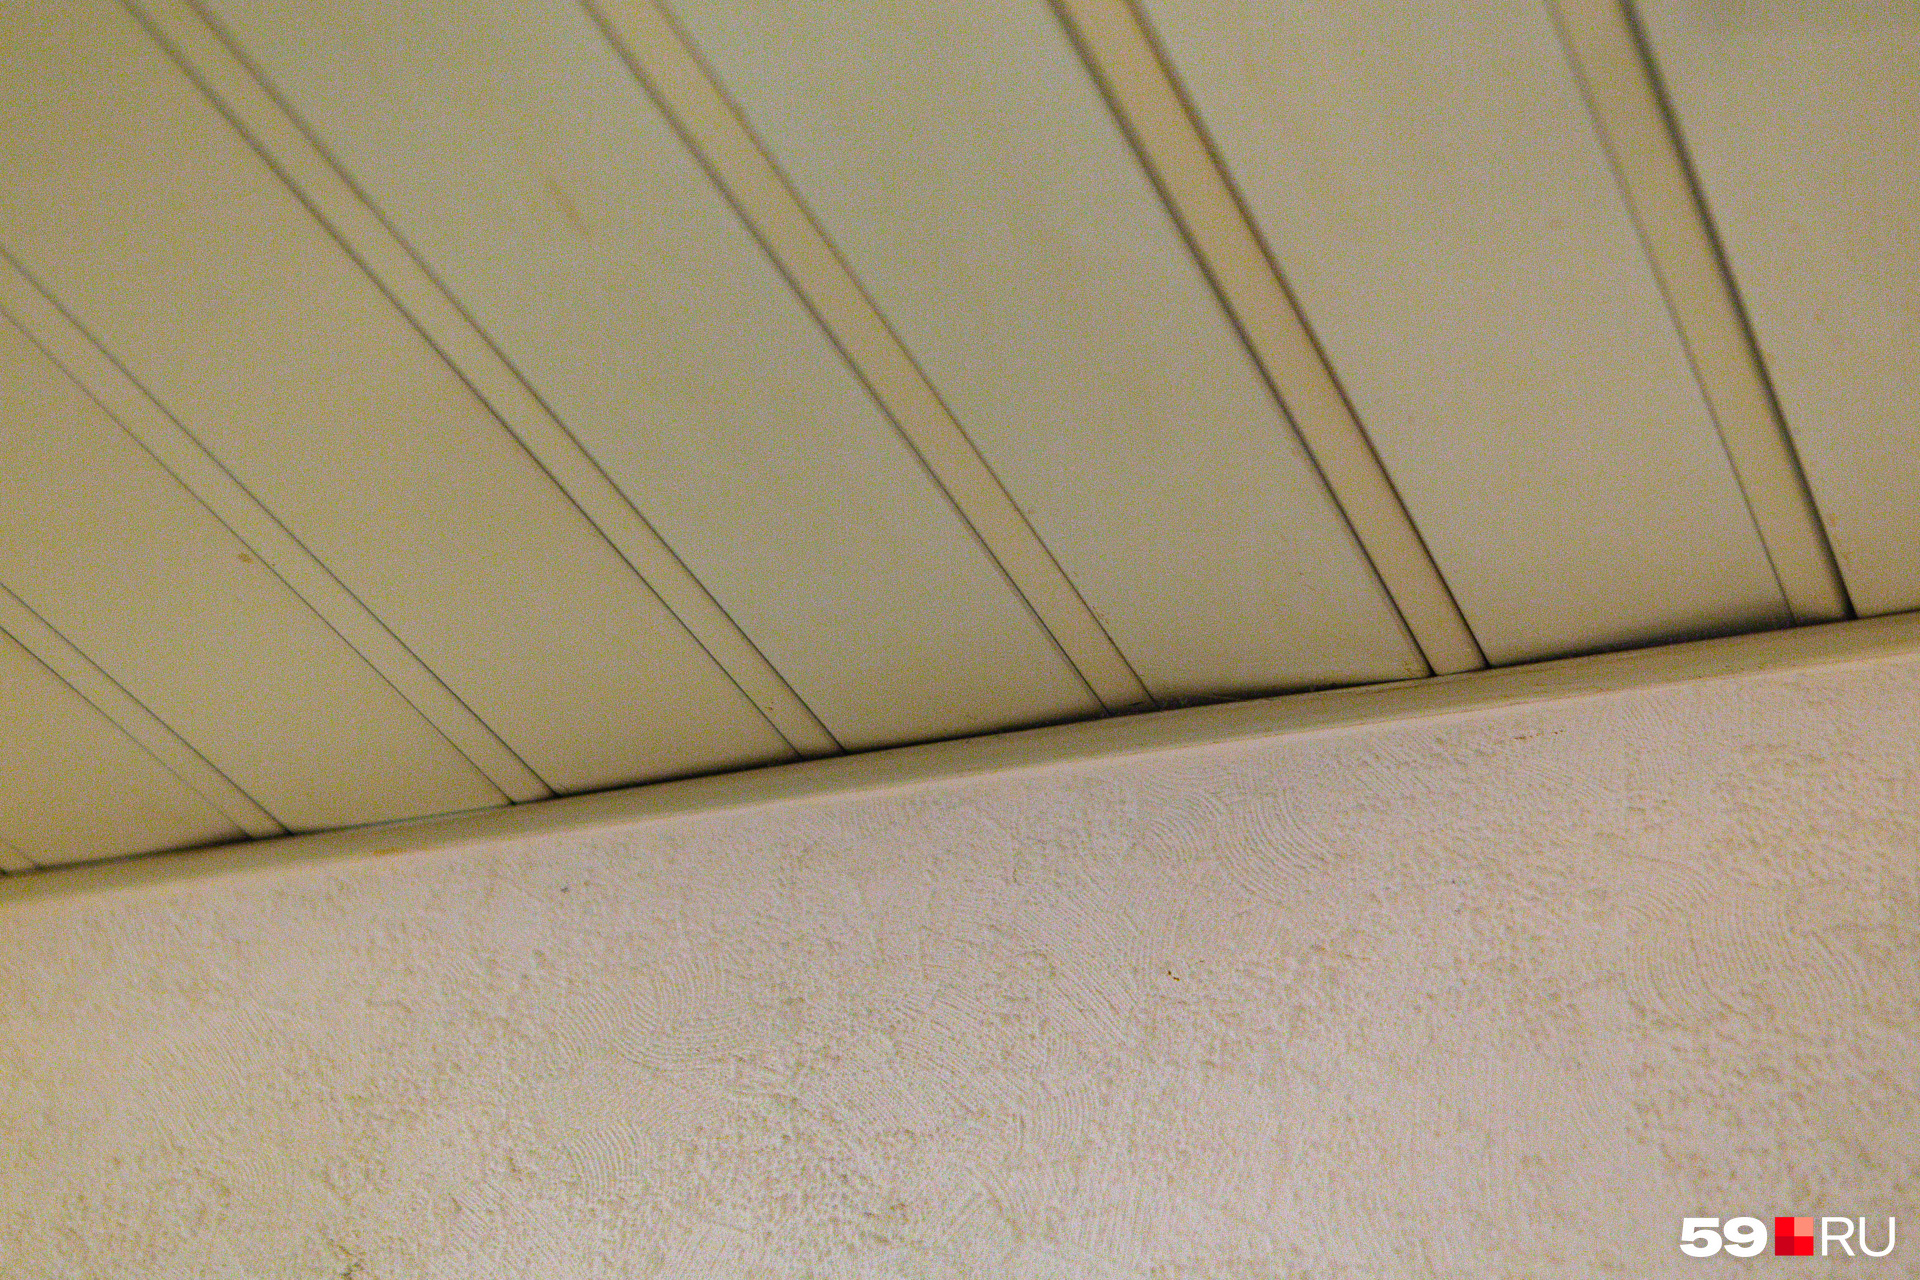 Панели на потолке искривились